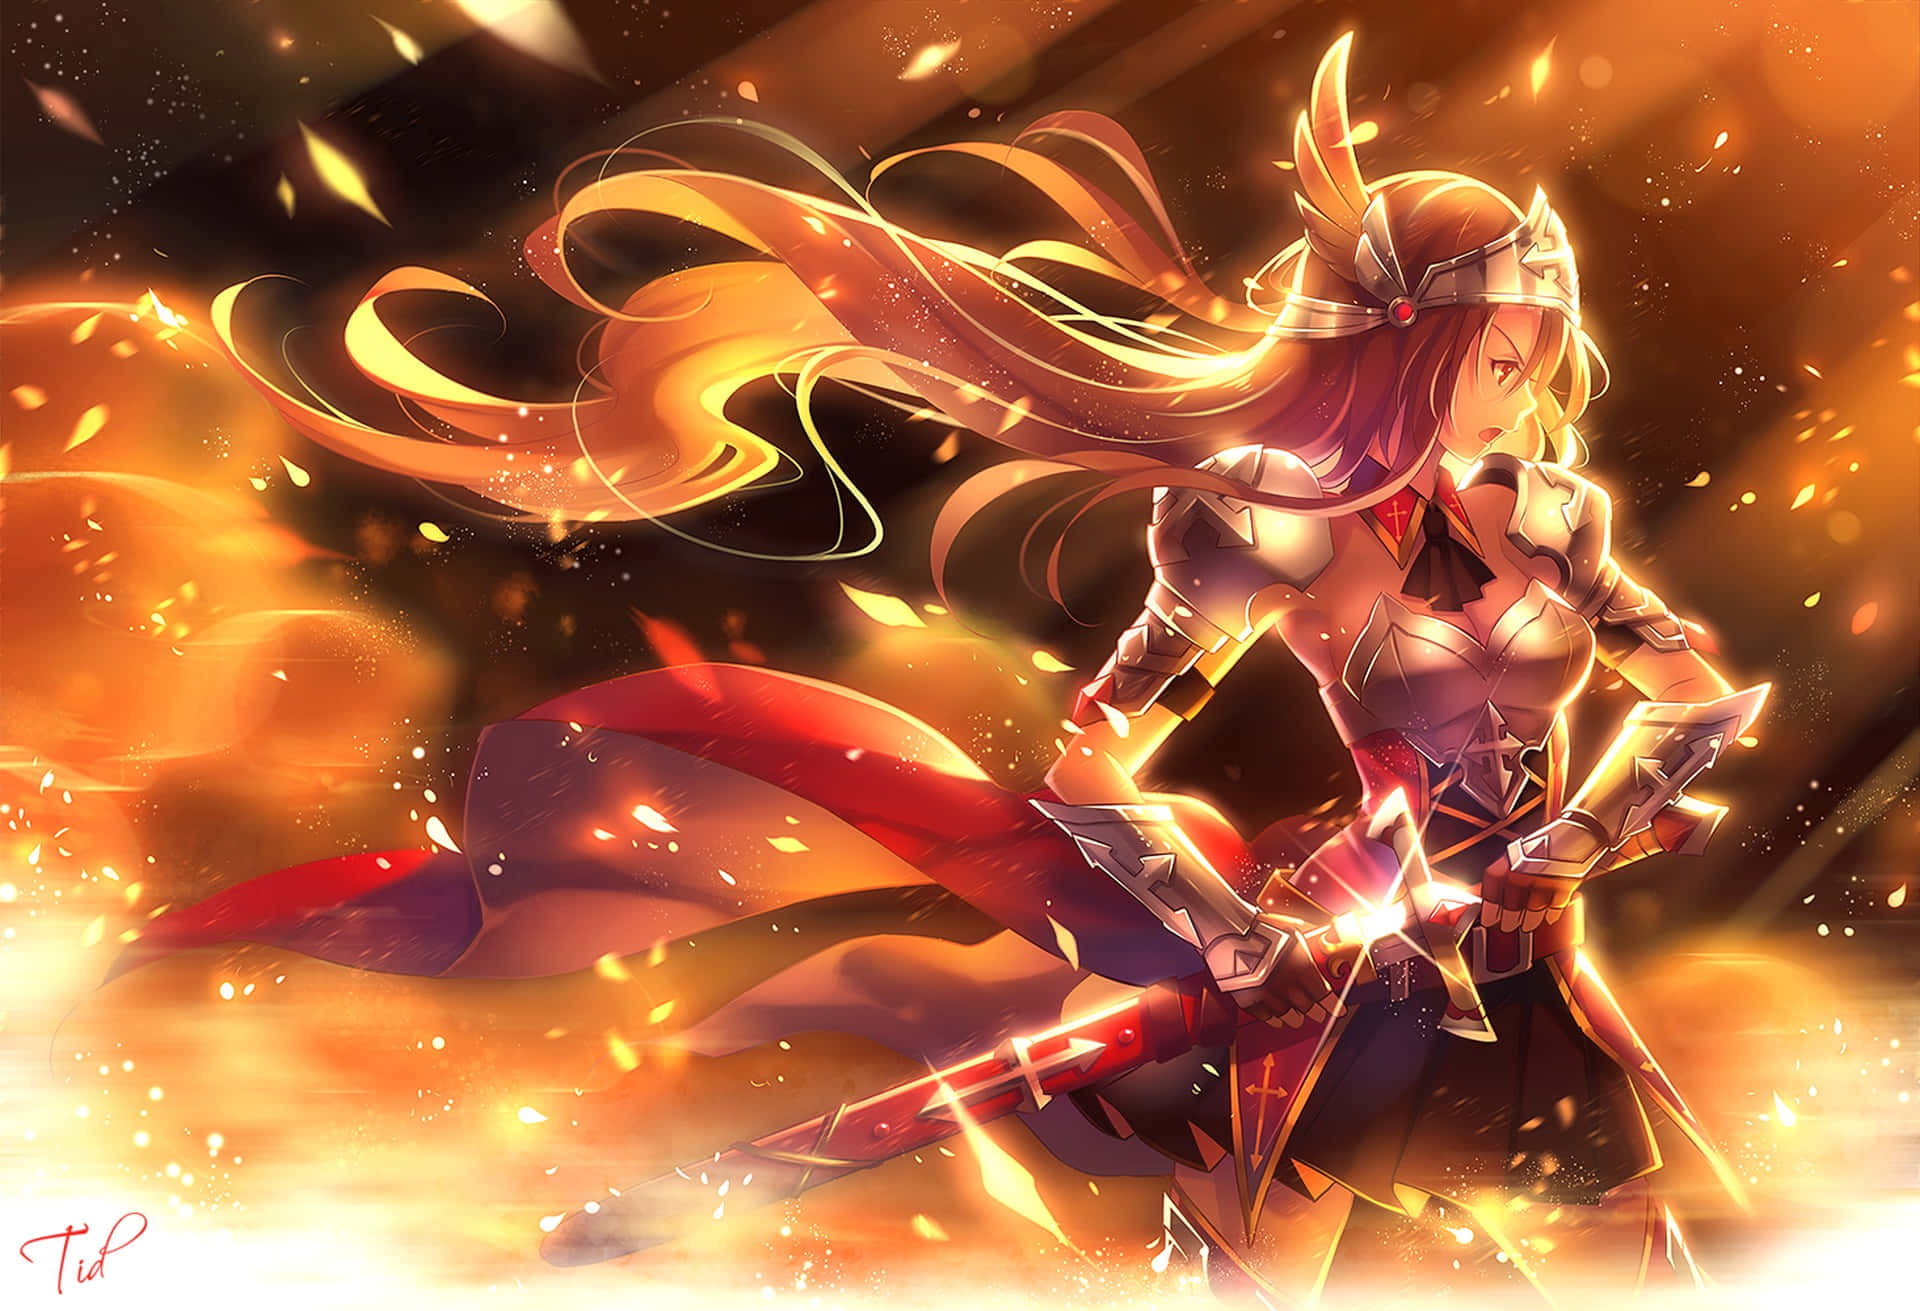 Beundraden Fantastiska Skönheten Av Anime Fire Wallpaper